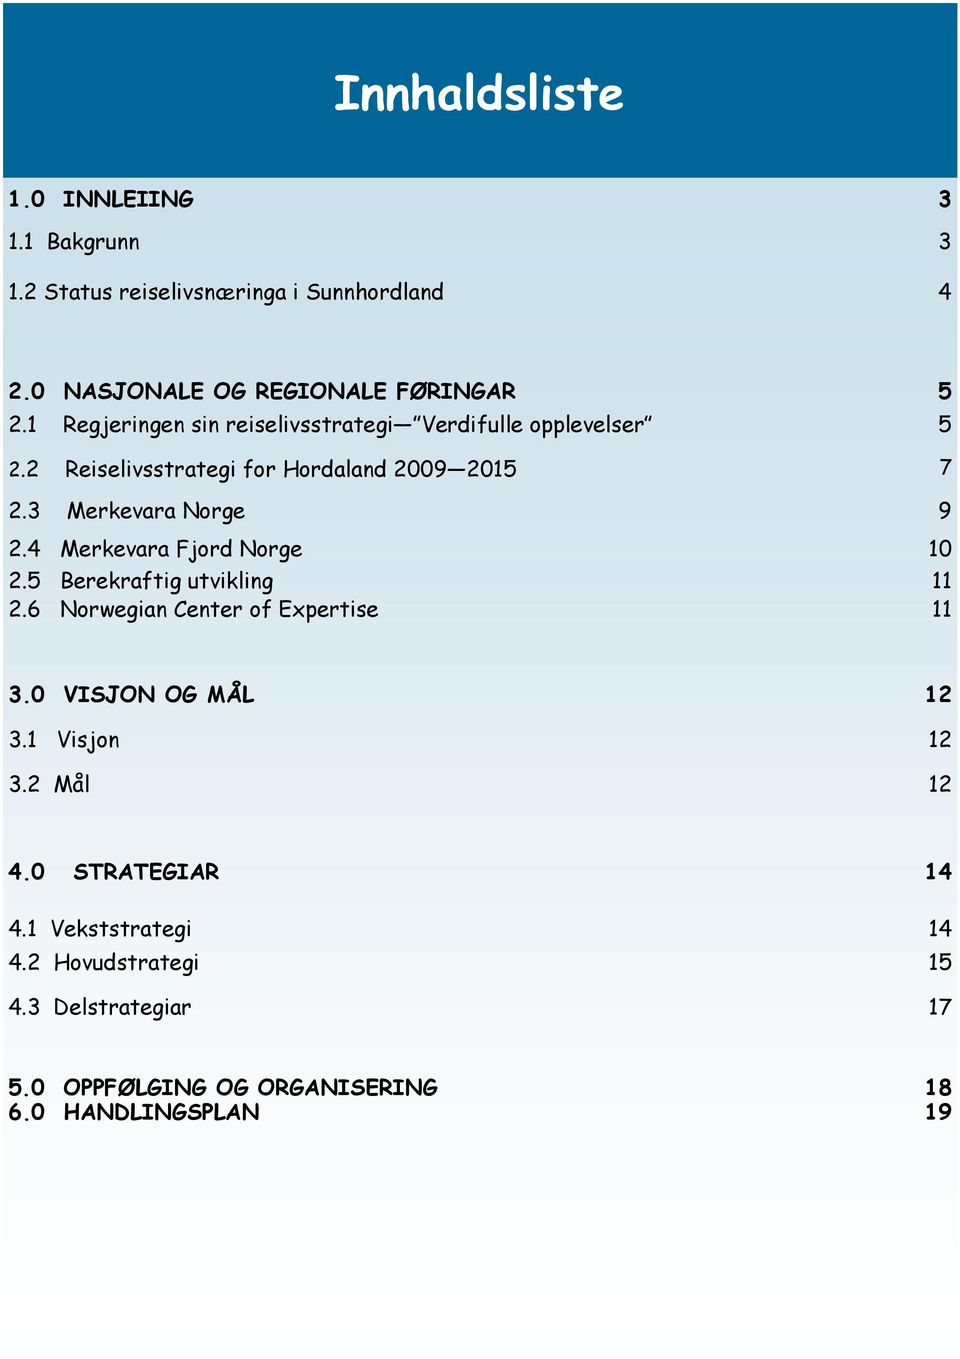 4 Merkevara Fjord Norge 10 2.5 Berekraftig utvikling 11 2.6 Norwegian Center of Expertise 11 3.0 VISJON OG MÅL 12 3.1 Visjon 12 3.